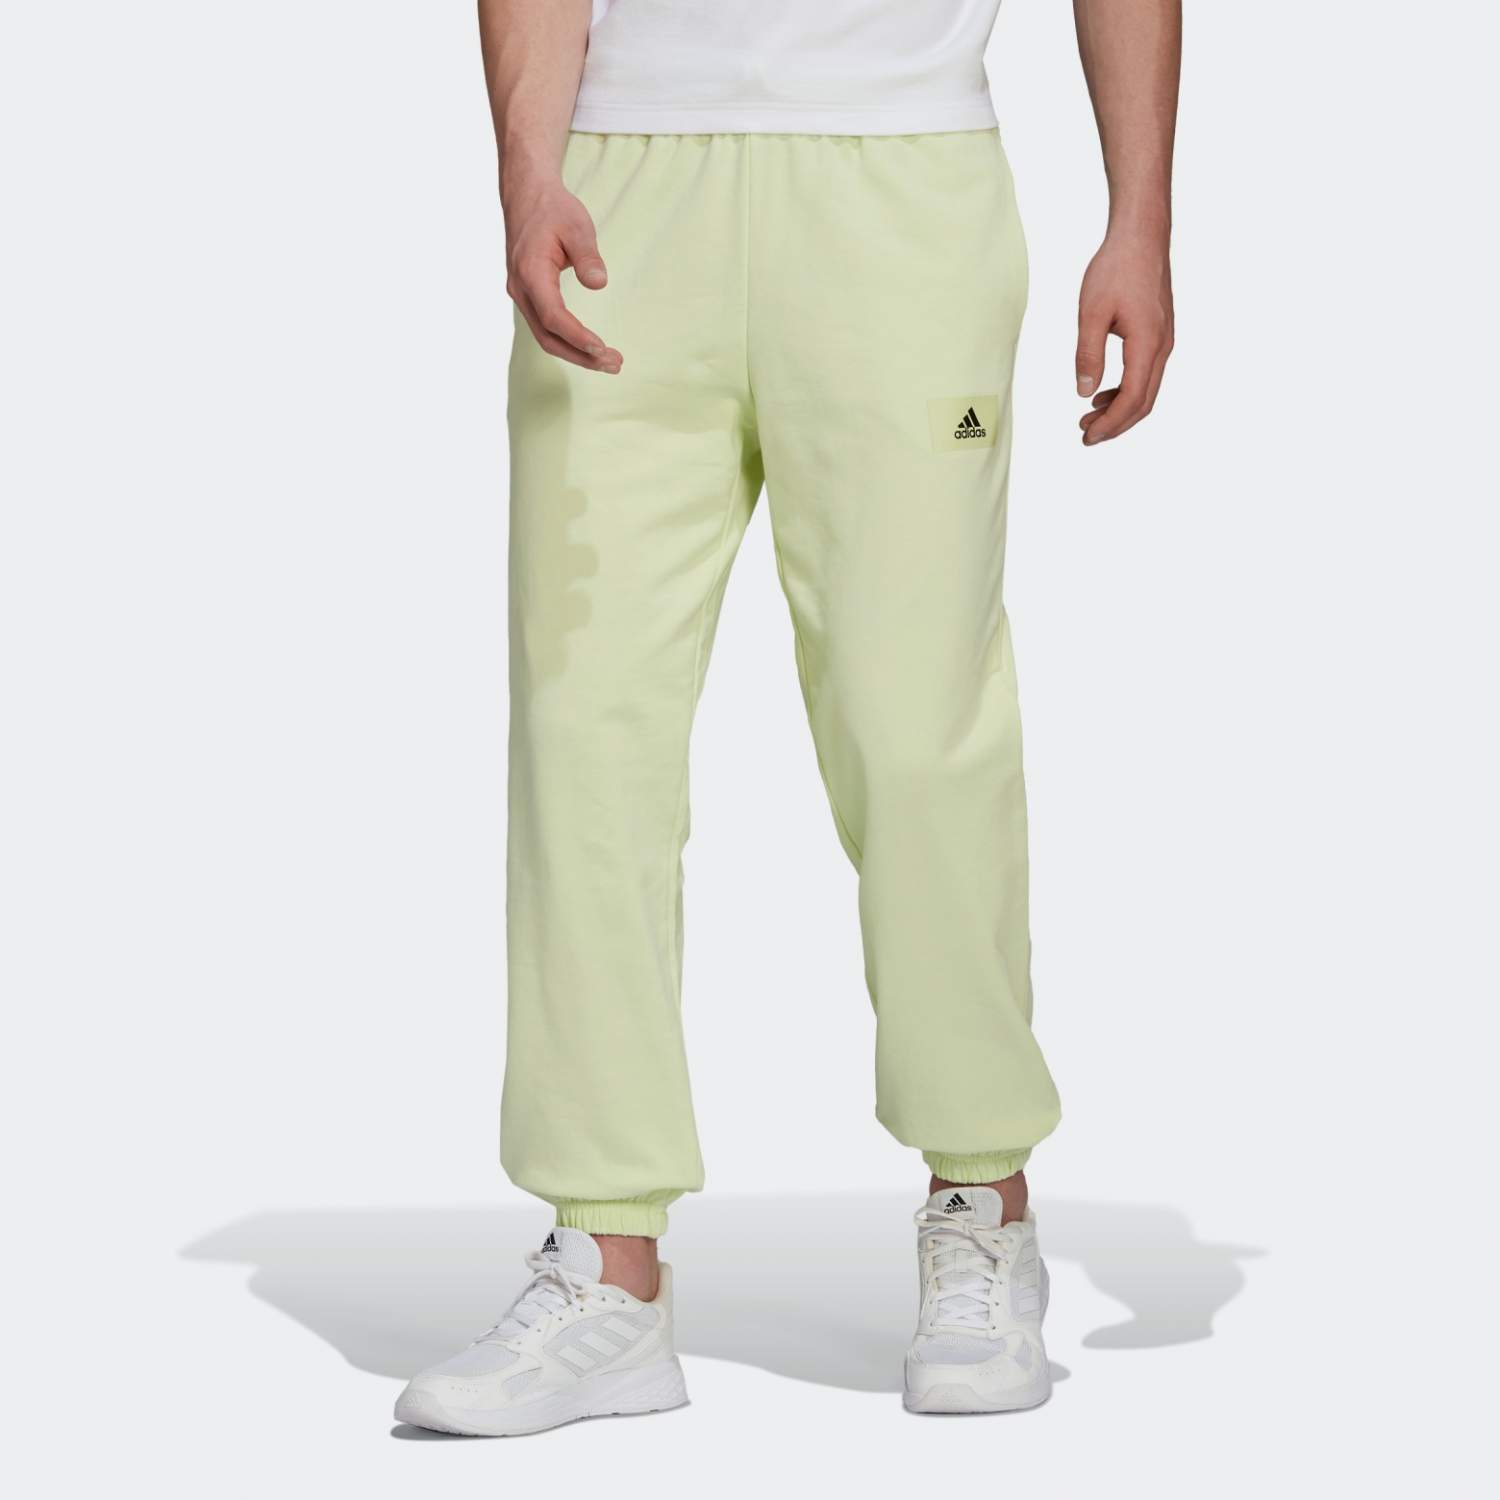 Спортивные брюки мужские Adidas HE4342 зеленые S - купить в Москве, цены наМегамаркет